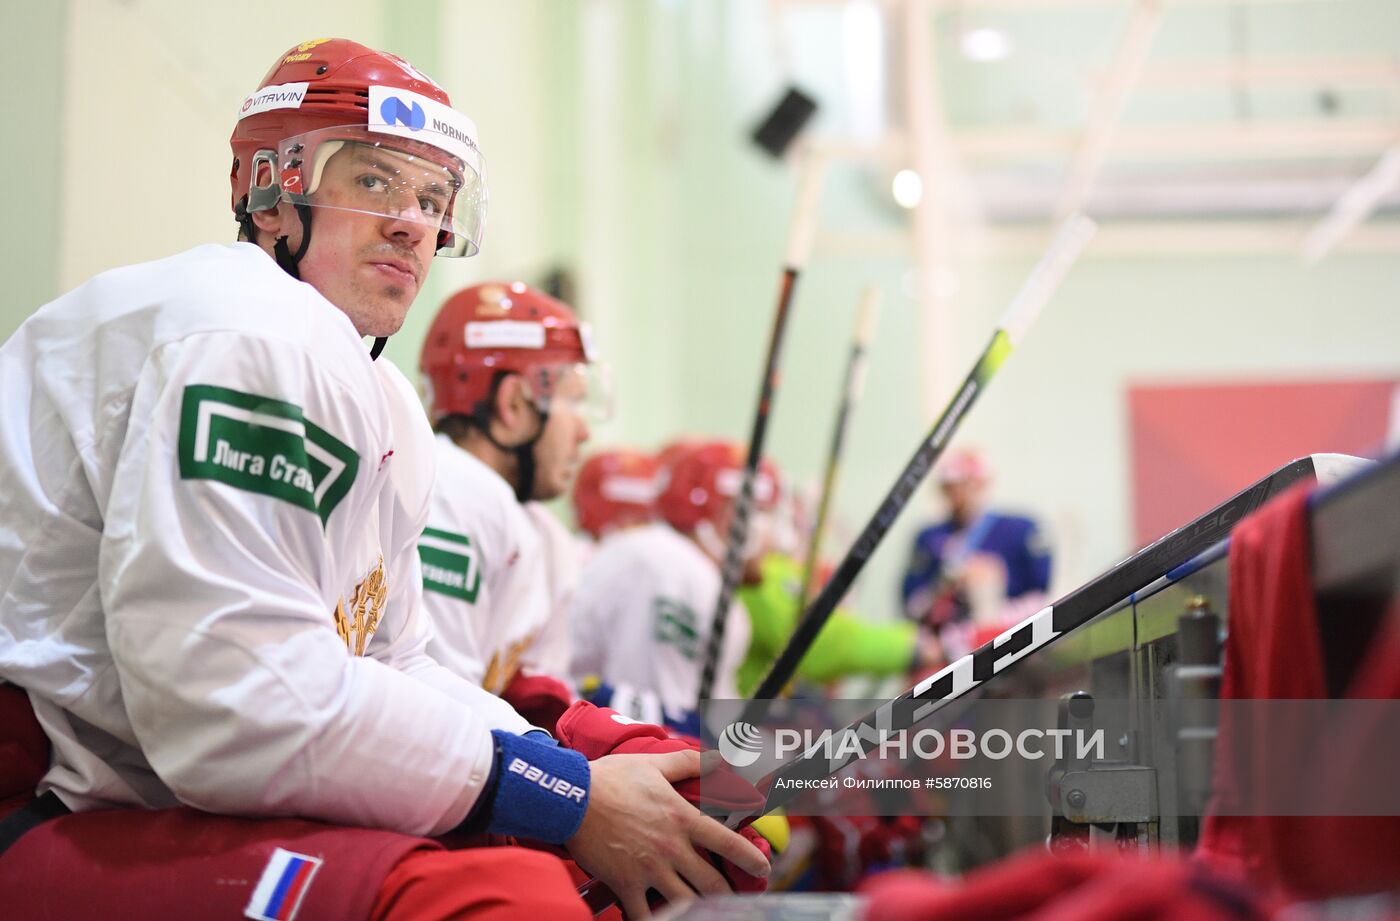 Хоккей. Тренировка сборной России 